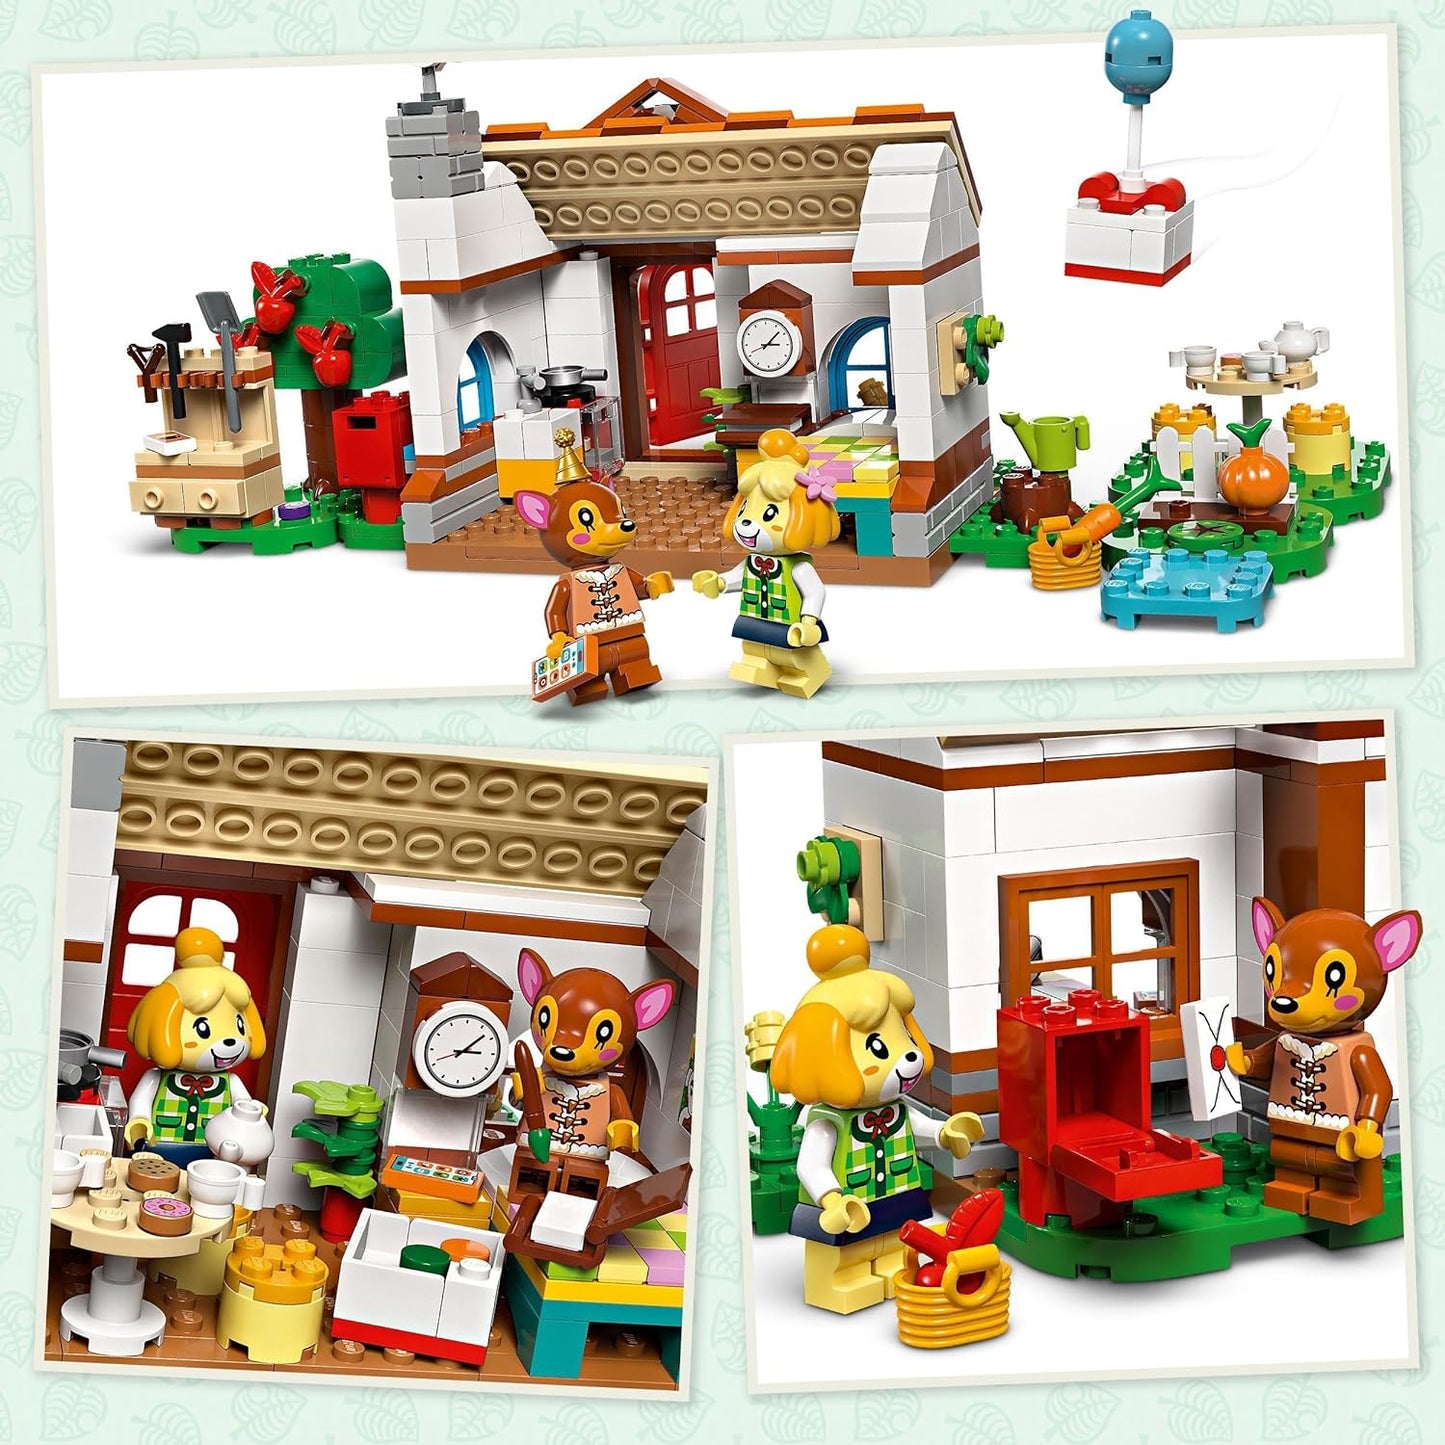 LEGO Animal Crossing Isabelle’s House Visit, brinquedo de construção criativo para crianças, meninas e meninos com mais de 6 anos, inclui 2 minifiguras da série de videogame, incluindo fauna, ideia de presente de aniversário 77049